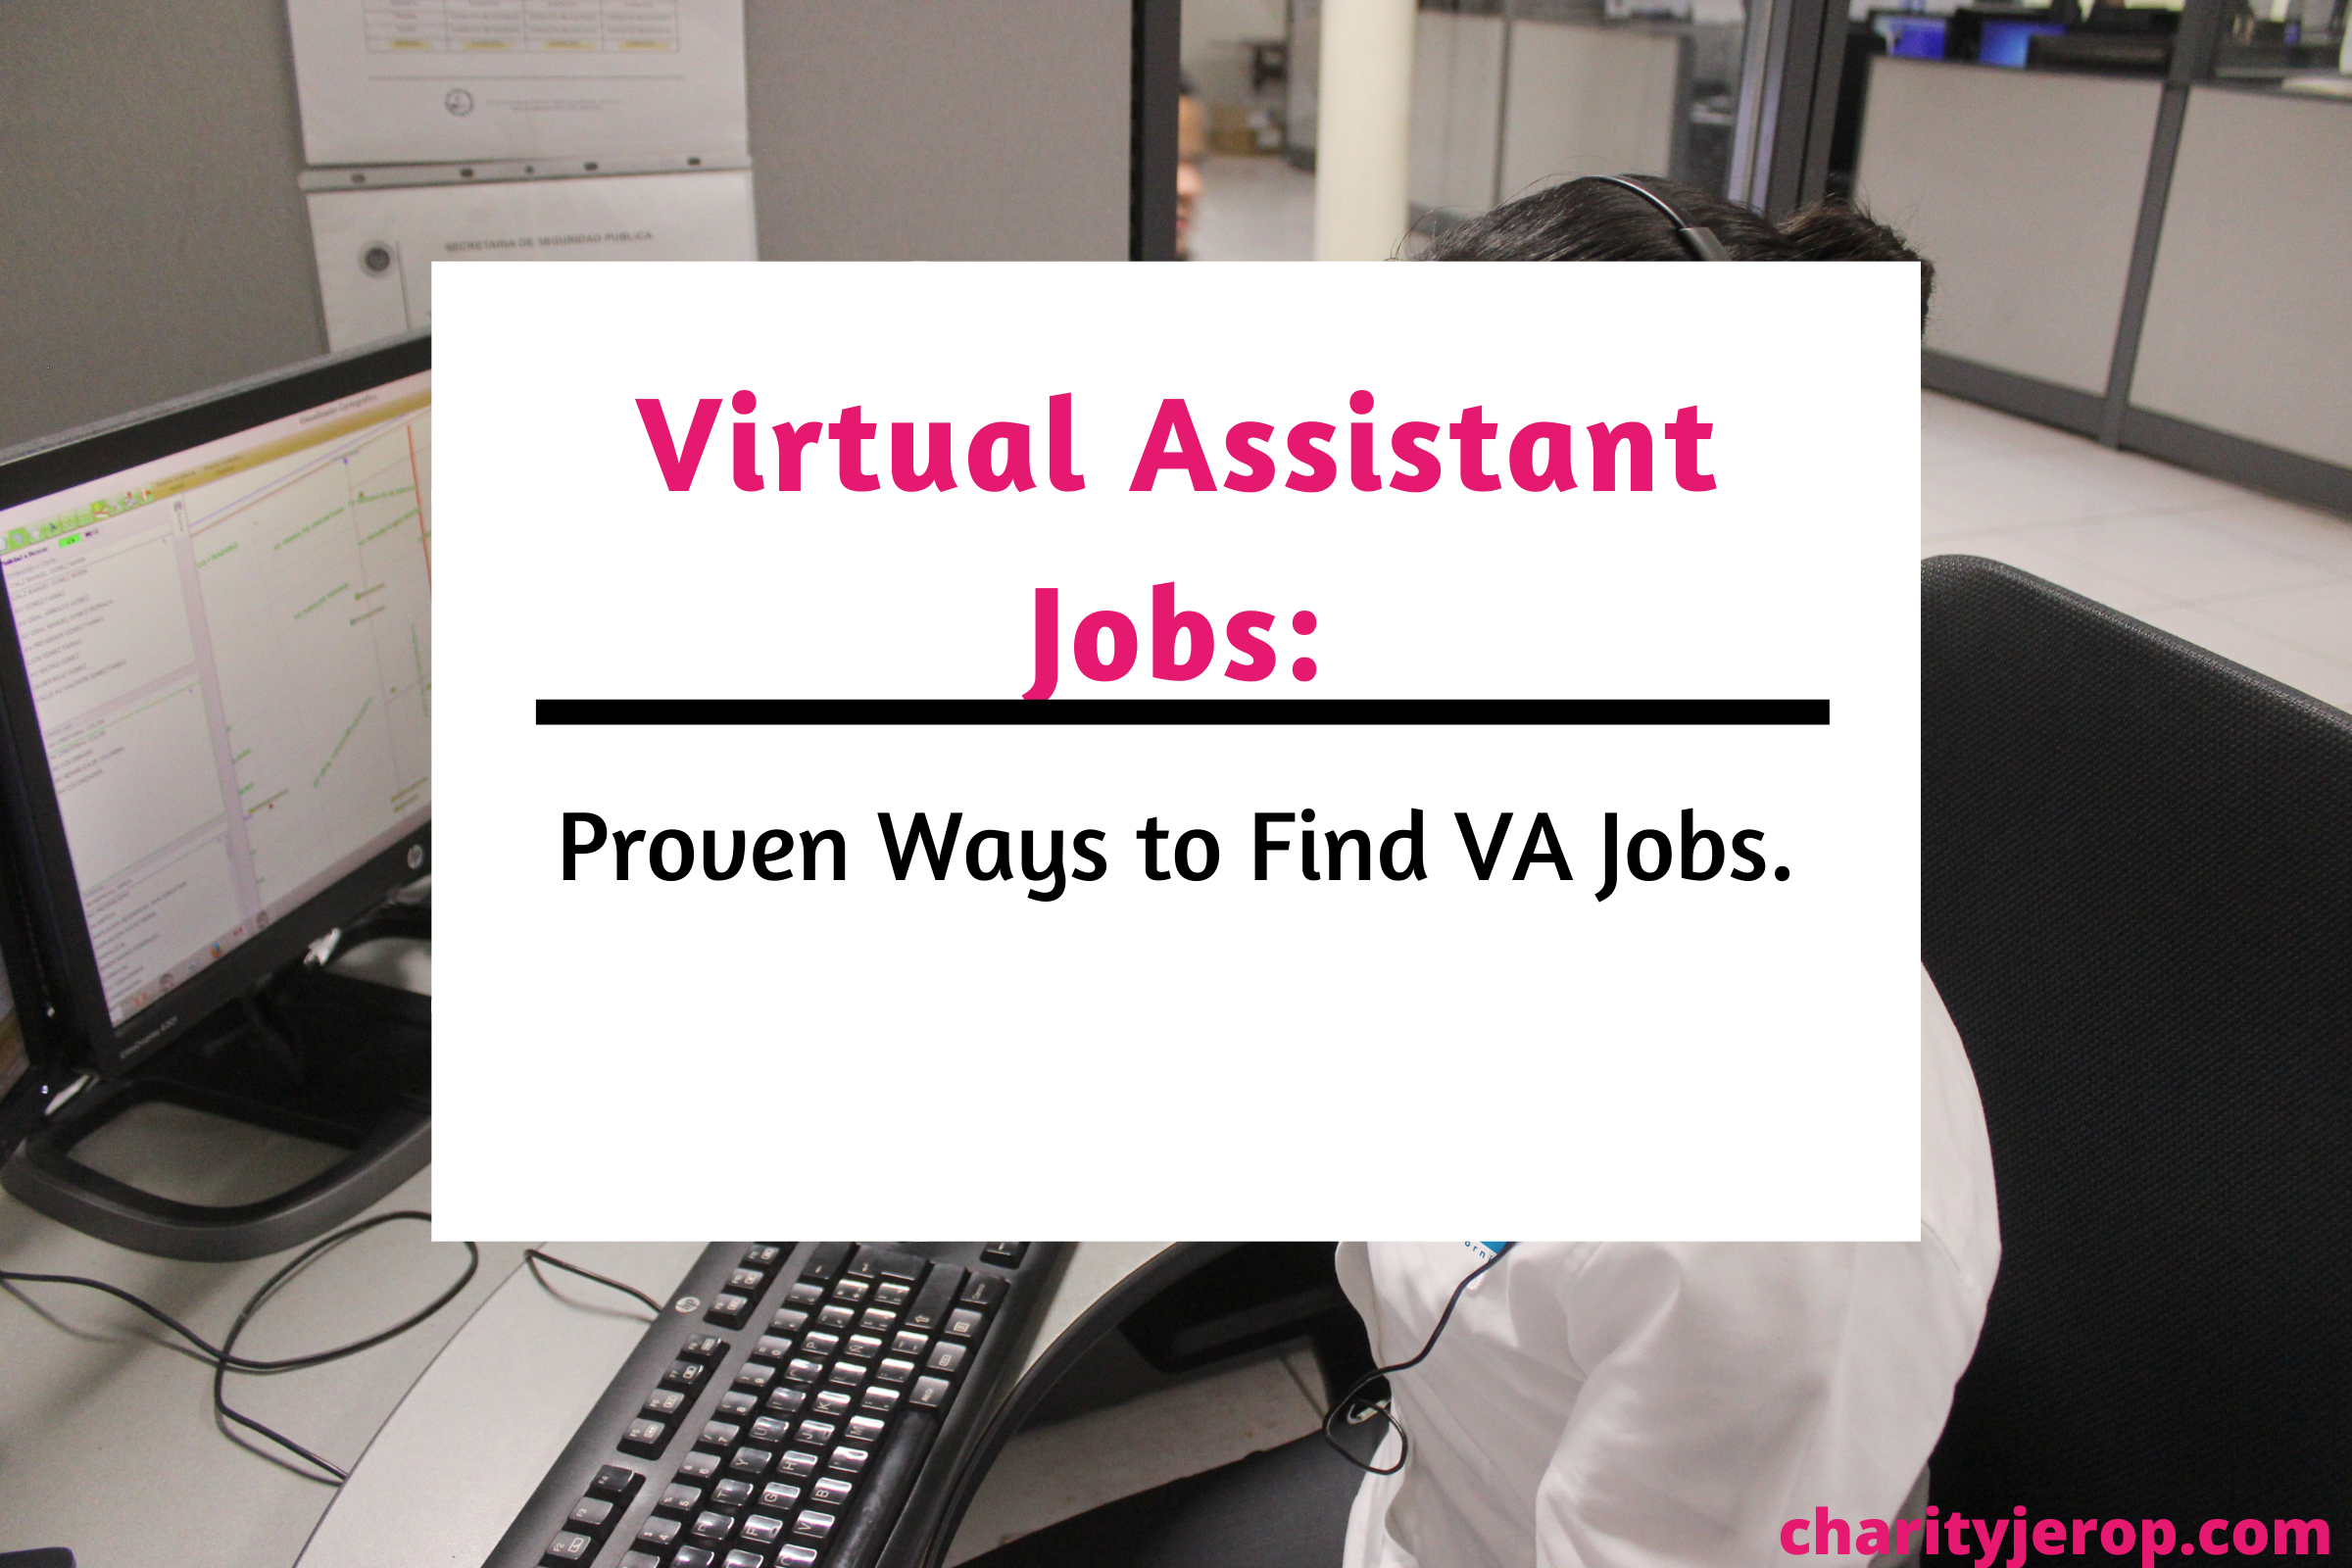 Virtual Assistant Jobs: Proven Ways to Get VA Jobs